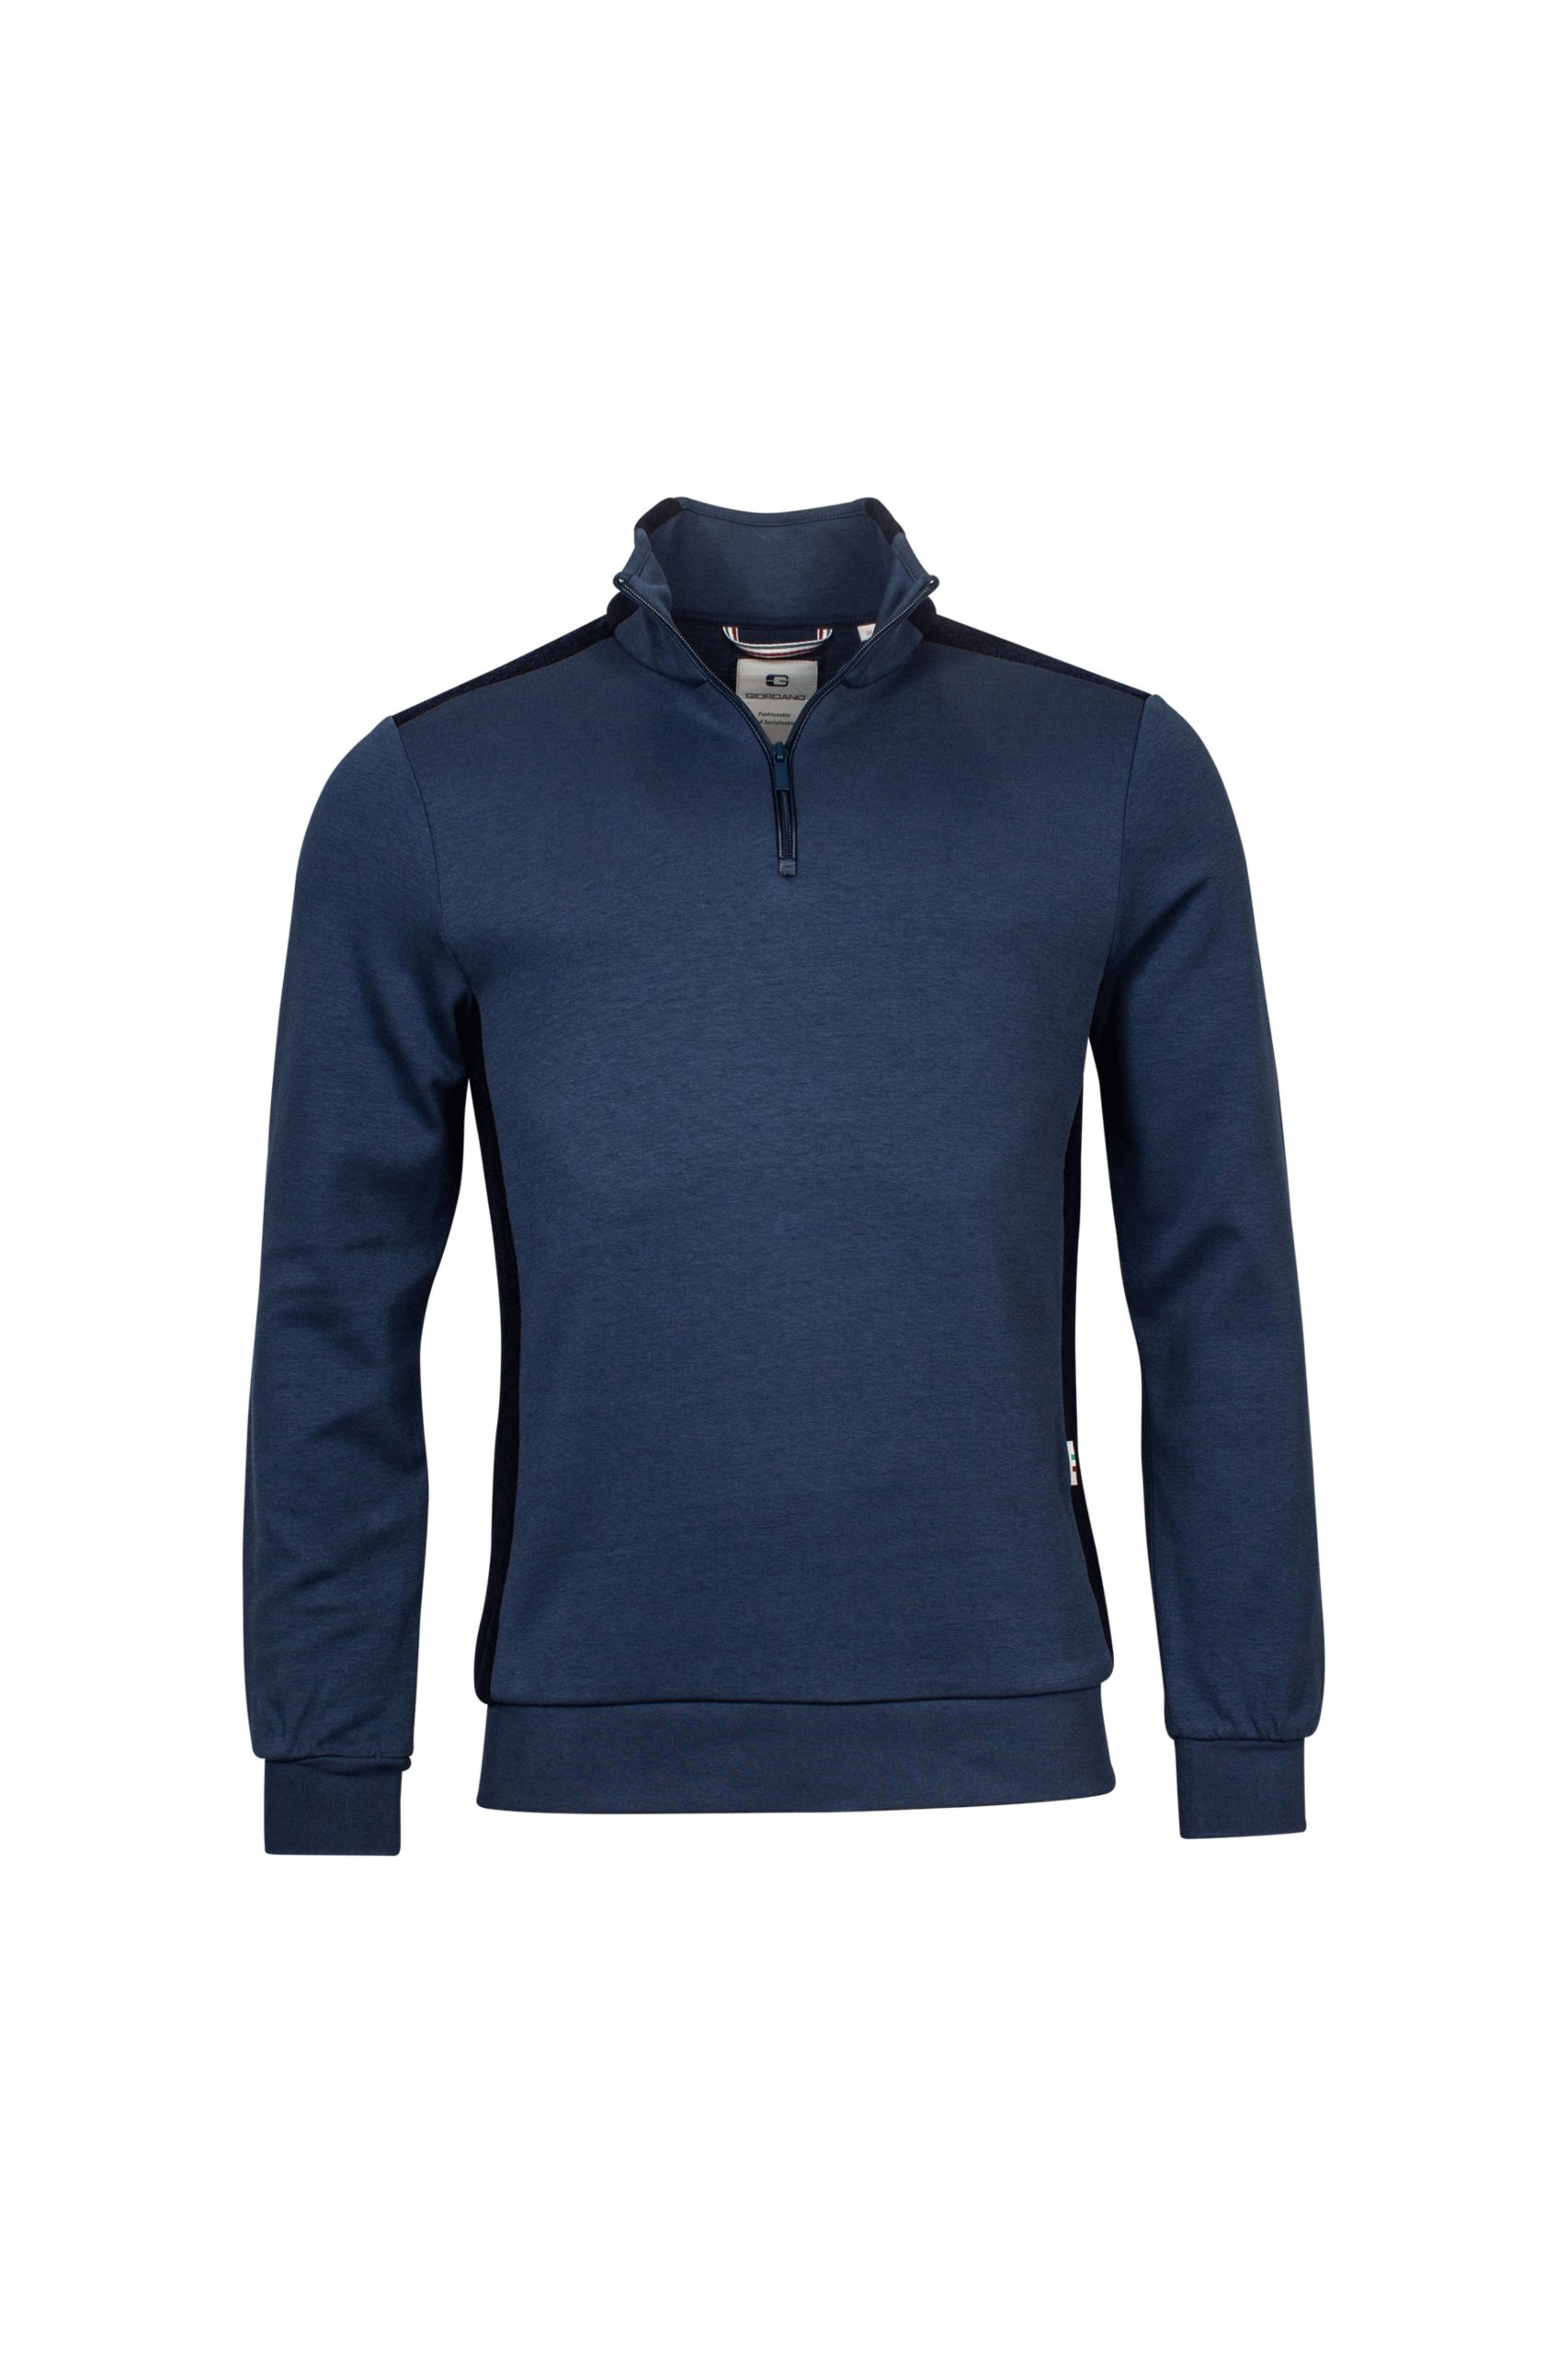 Giordano Half Zip Blue Sweatshirt - Waterers